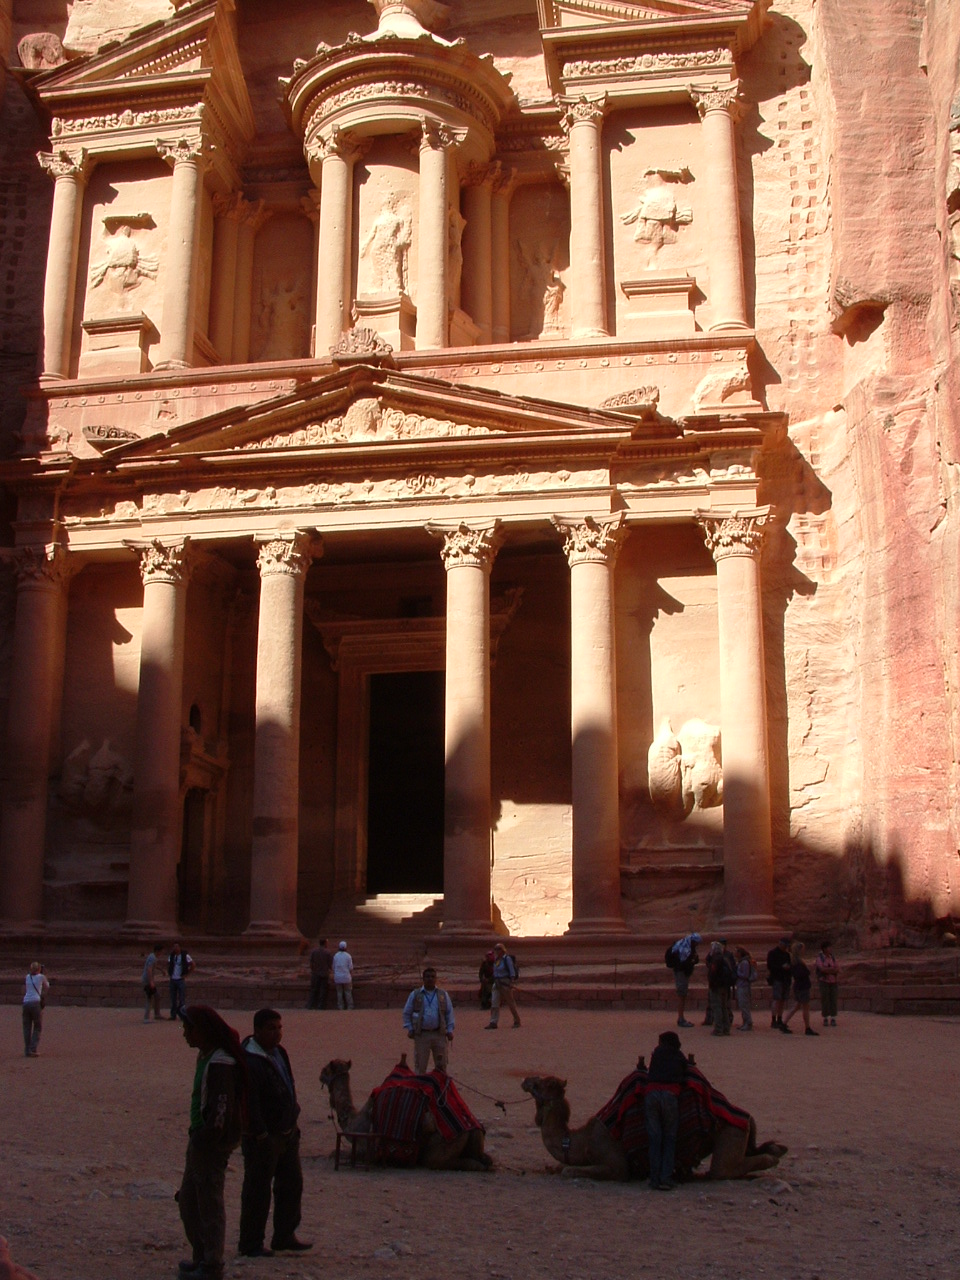 Jordanie: Site de PETRA, une cité antique, une ville rose............